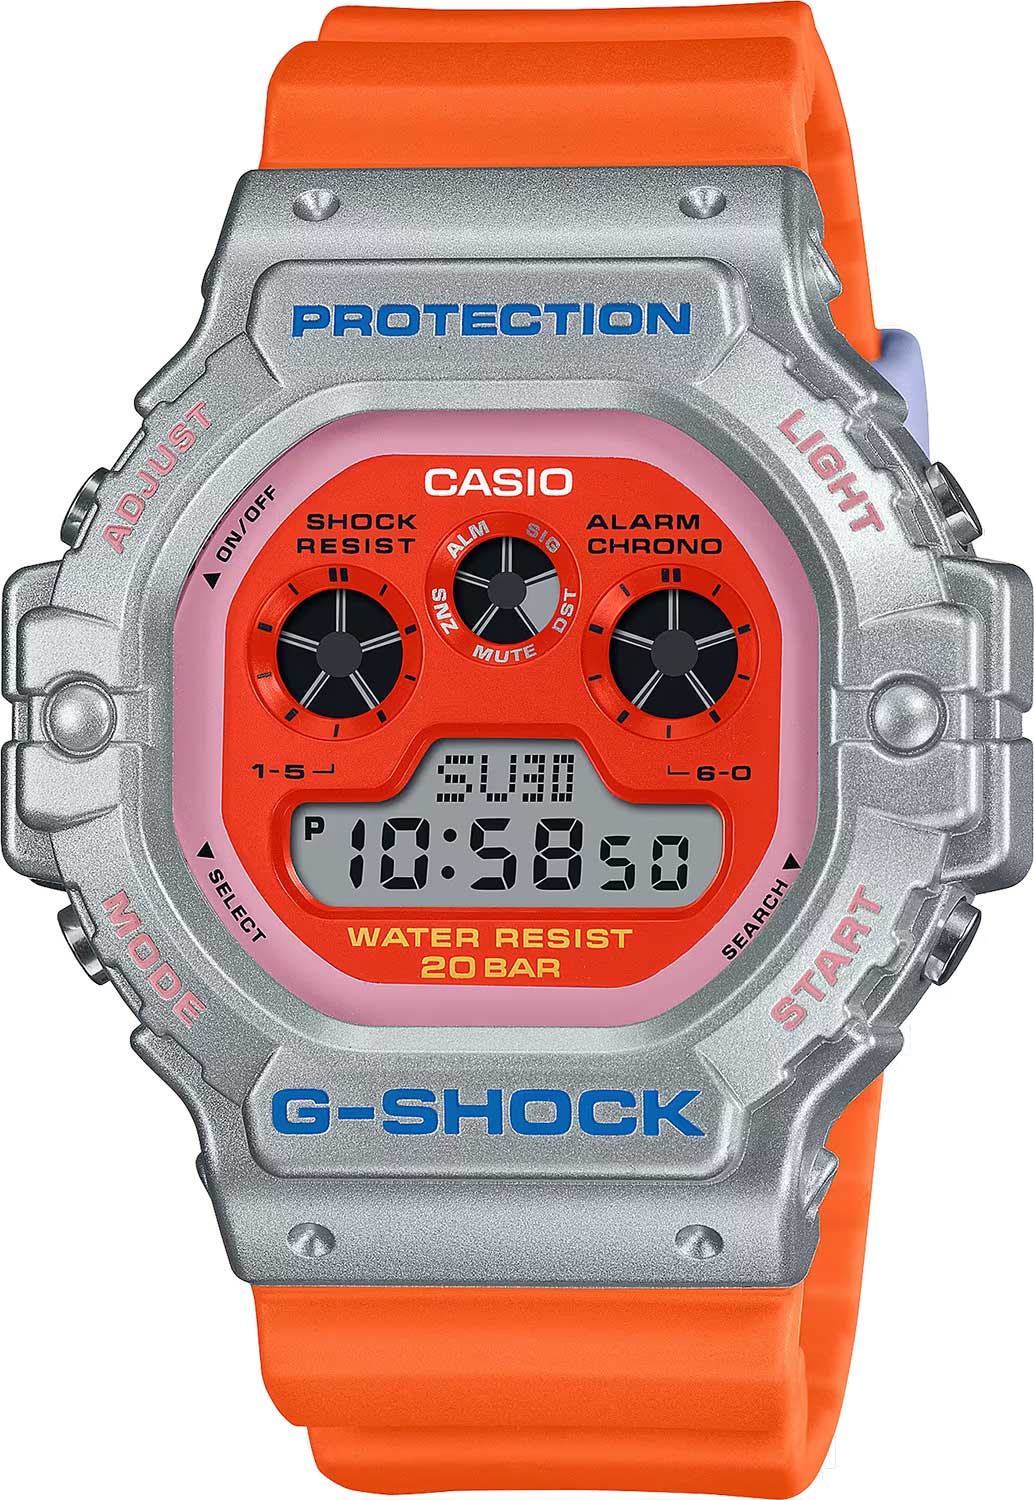    Casio G-SHOCK DW-5900EU-8A4  